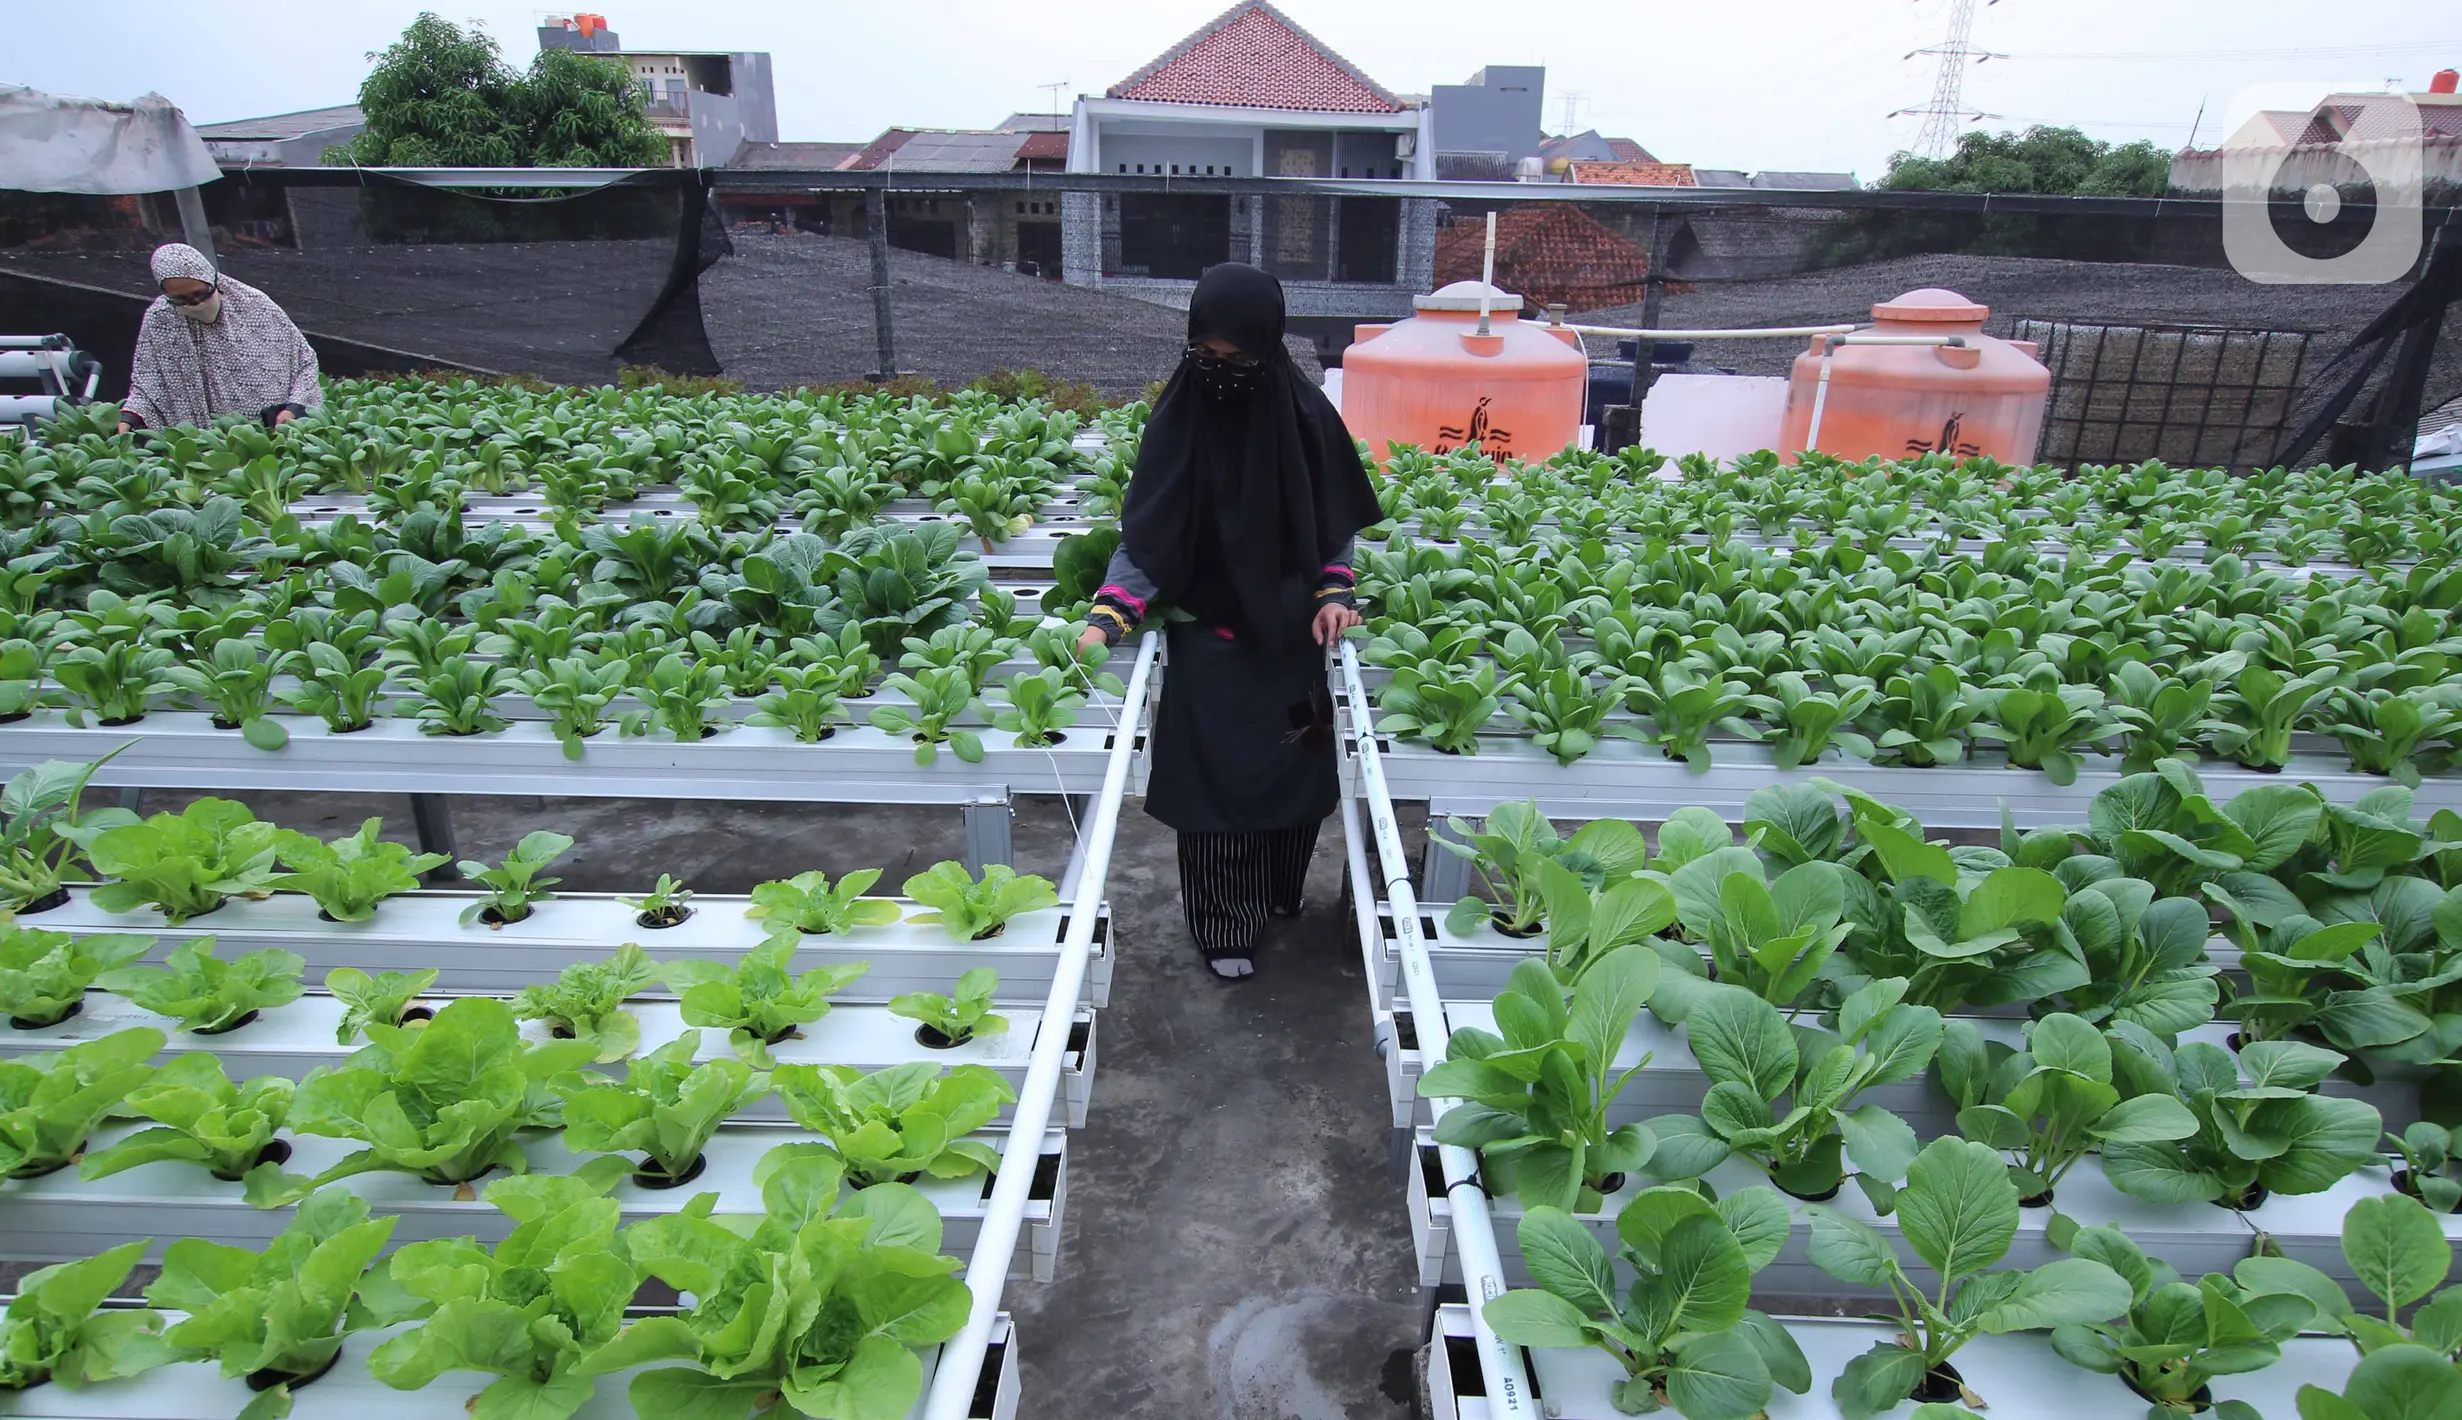 Warga merawat sayuran yang ditanam menggunakan metode hidroponik di atap rumahnya di Ciledug, Kota Tangerang, Banten, Sabtu (24/10/2020). Atap rumah dimanfaatkan untuk budi daya sayuran hidroponik guna menambah pendapatan dan tetap produktif di masa pandemi COVID-19. (Liputan6.com/Angga Yuniar)